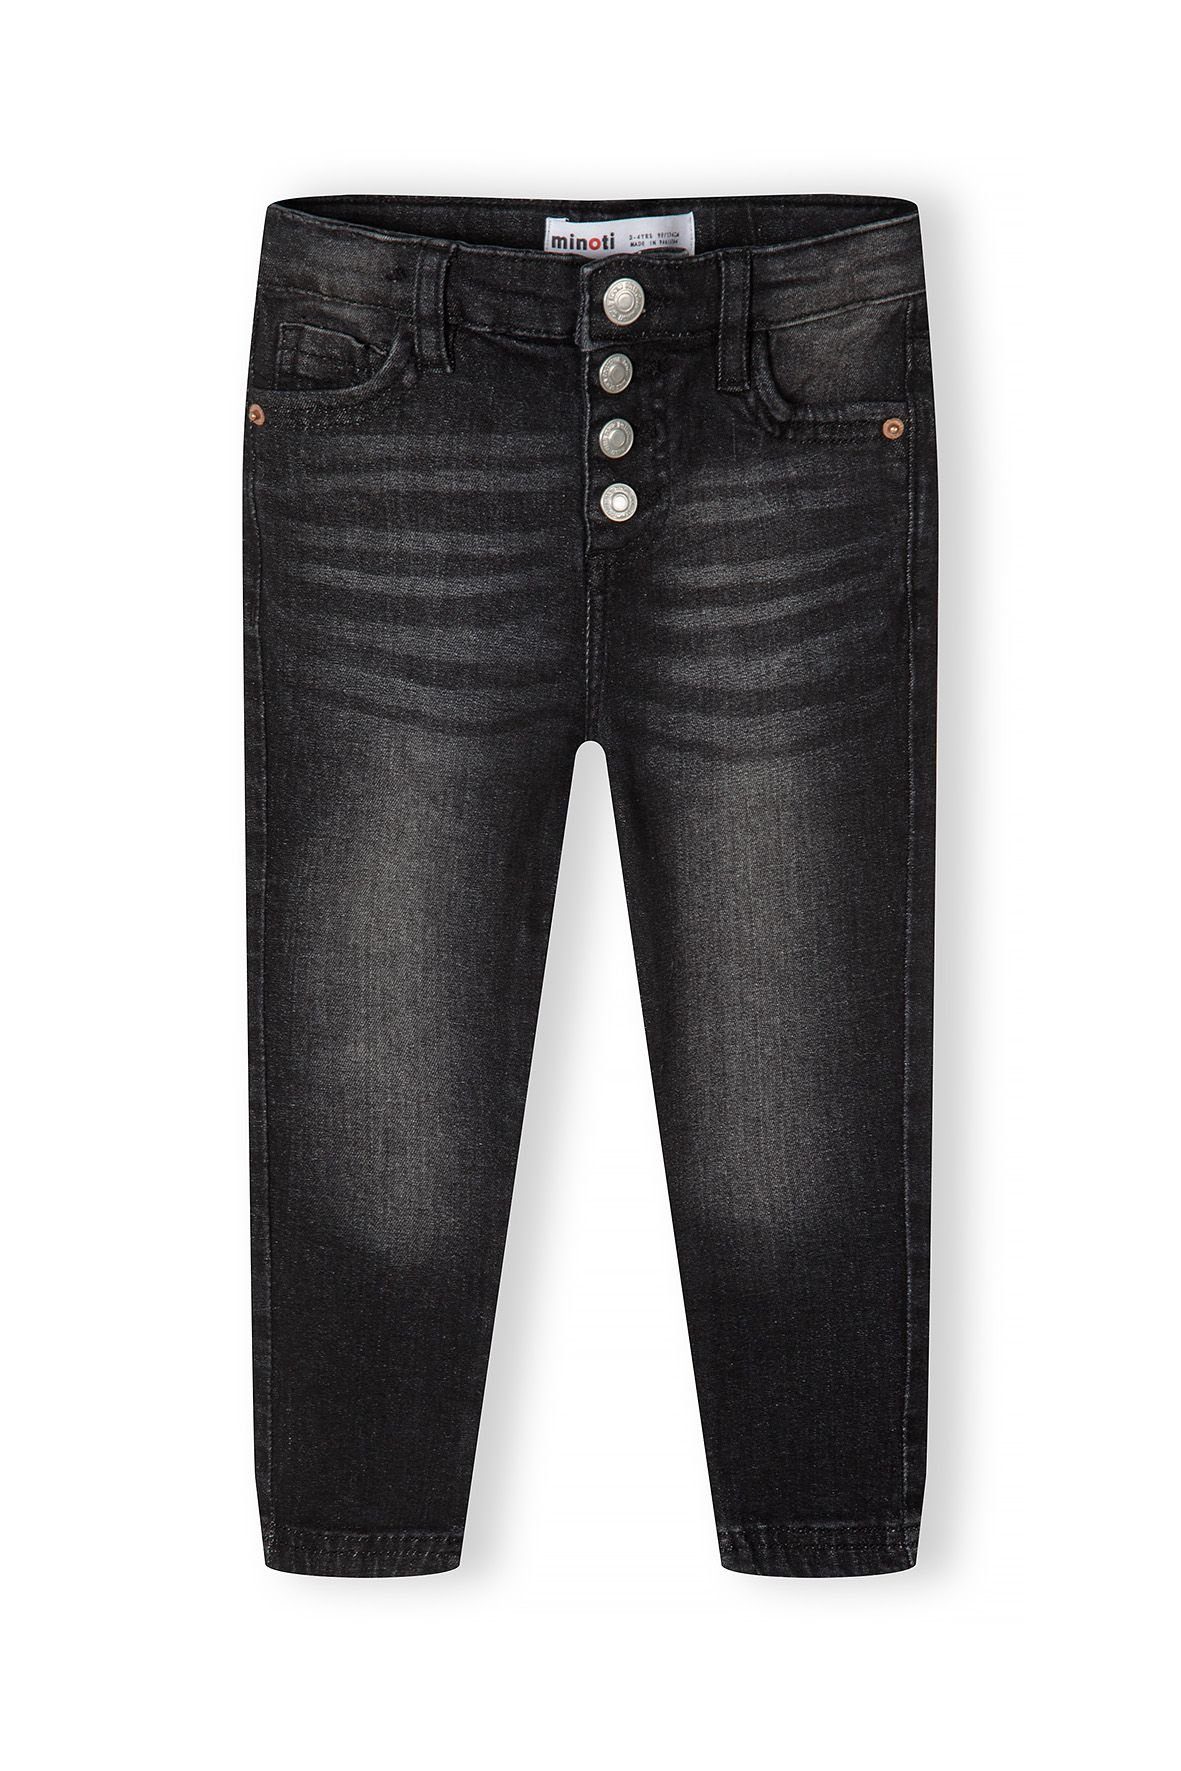 Großbritannien in MINOTI mit (12m-14y), Bein Entworfen engem Slim-fit-Jeans